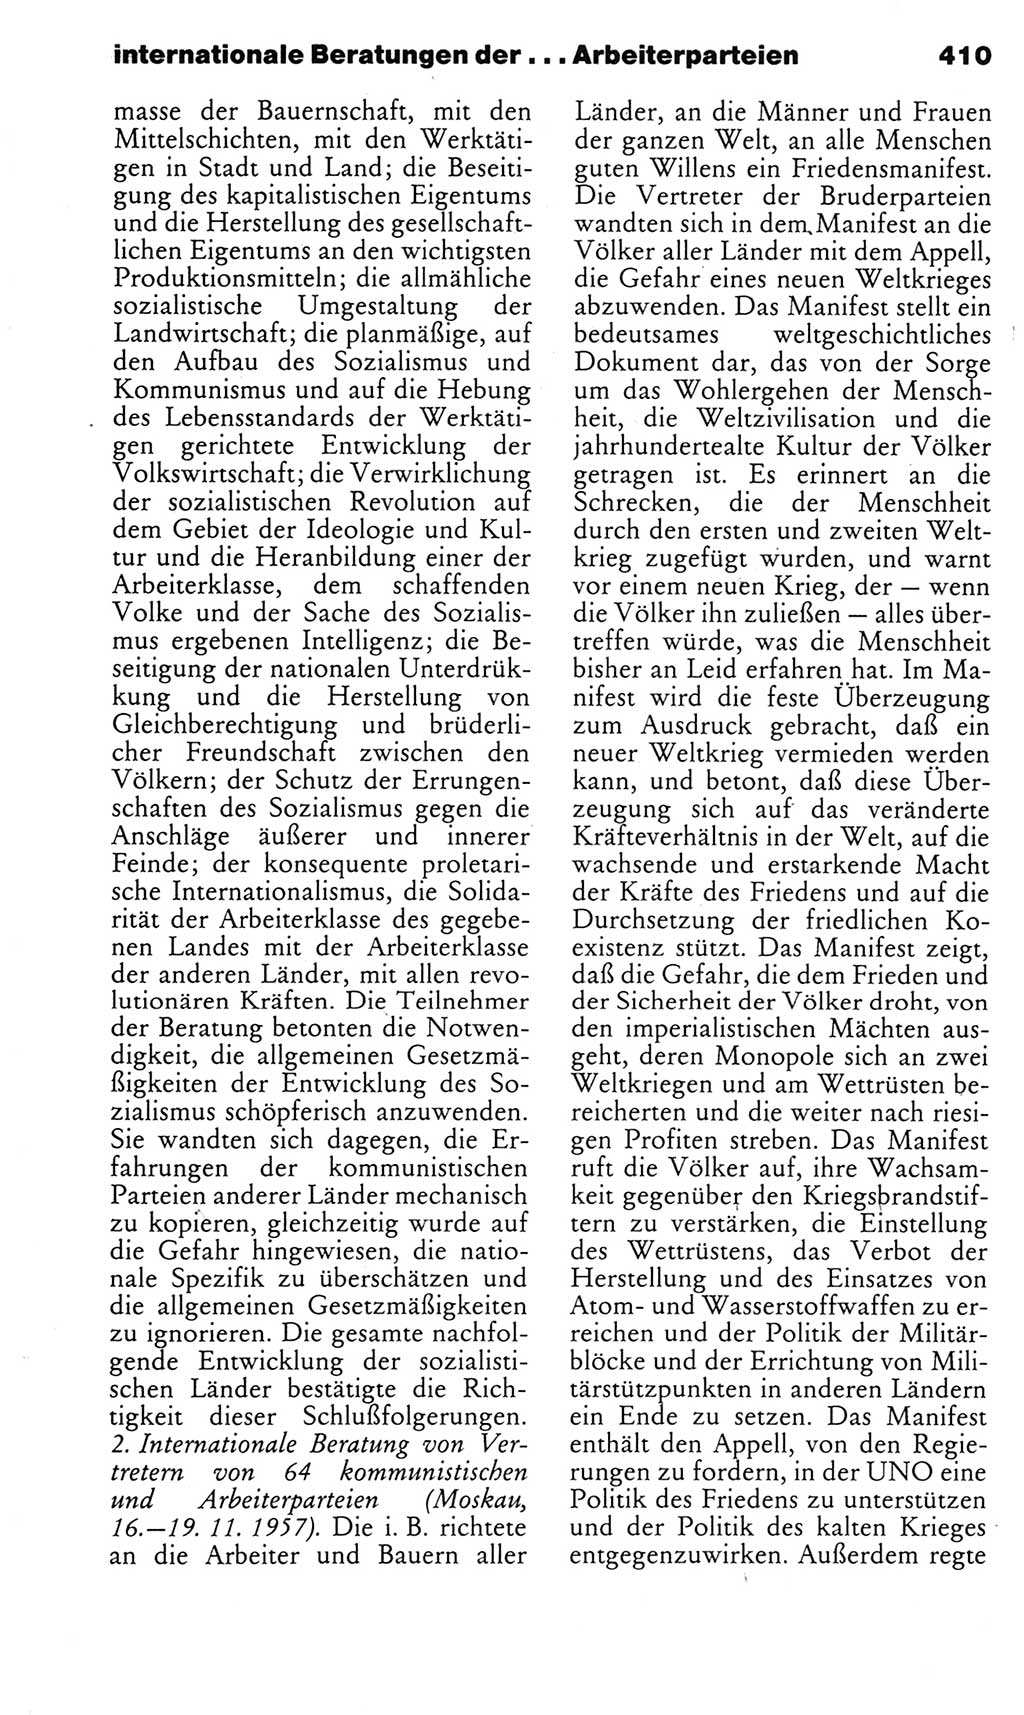 Kleines politisches Wörterbuch [Deutsche Demokratische Republik (DDR)] 1983, Seite 410 (Kl. pol. Wb. DDR 1983, S. 410)